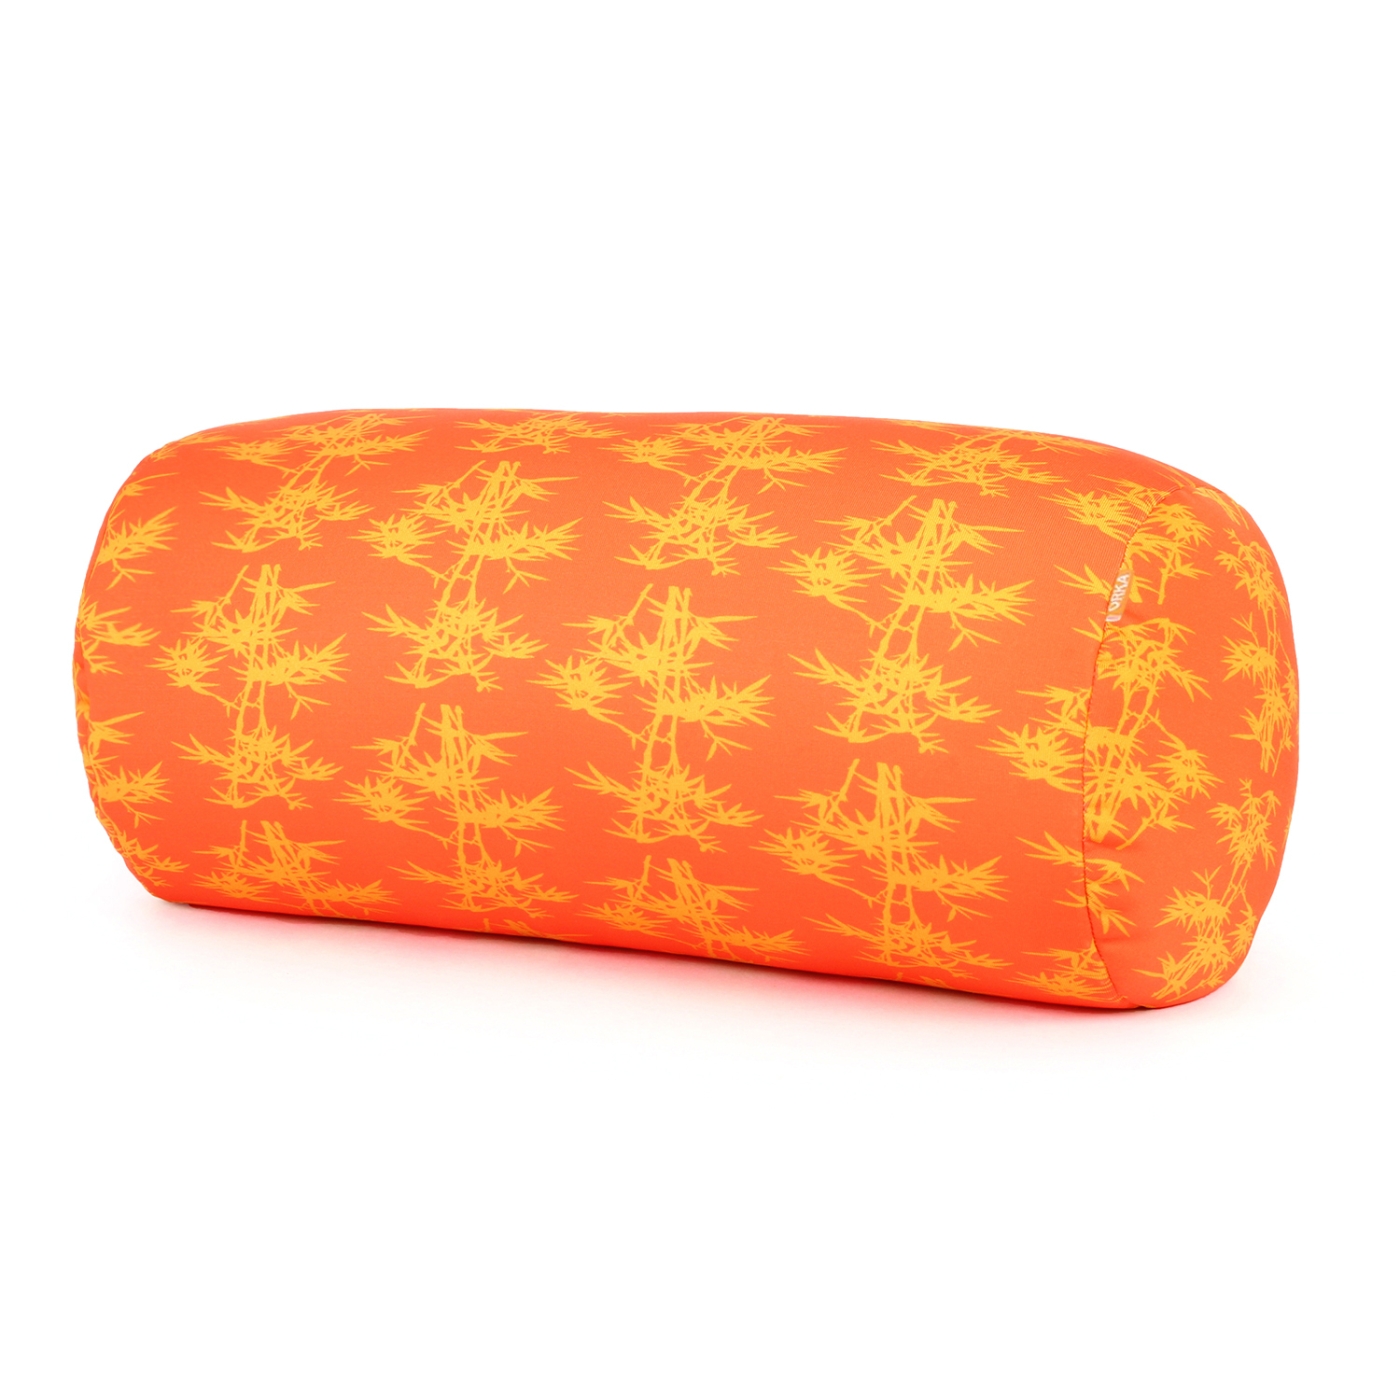 ORKA Digital Printed Microbeads Bolster Cushion - Orange  